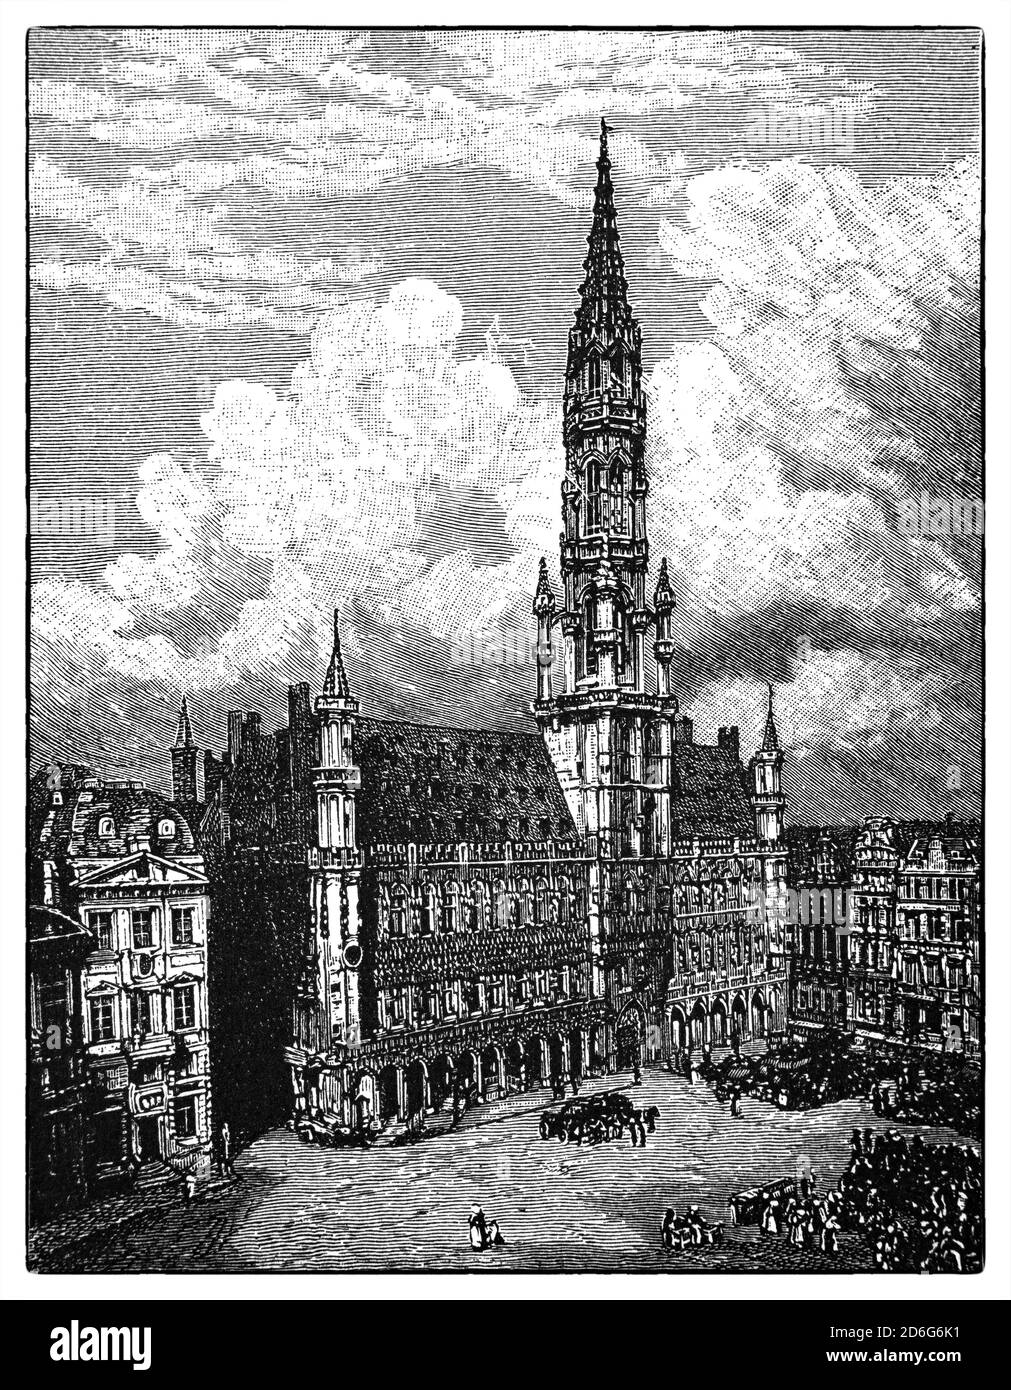 Blick auf das Rathaus aus dem 19. Jahrhundert oder das Hôtel de Ville, ein gotisches Gebäude aus dem Mittelalter, auf dem berühmten Grand Place in Brüssel, Belgien. Es ist das einzige erhaltene mittelalterliche Gebäude des Grand Place und gilt als Meisterwerk der bürgerlichen gotischen Architektur und vor allem der Brabantischen Gotik. Stockfoto